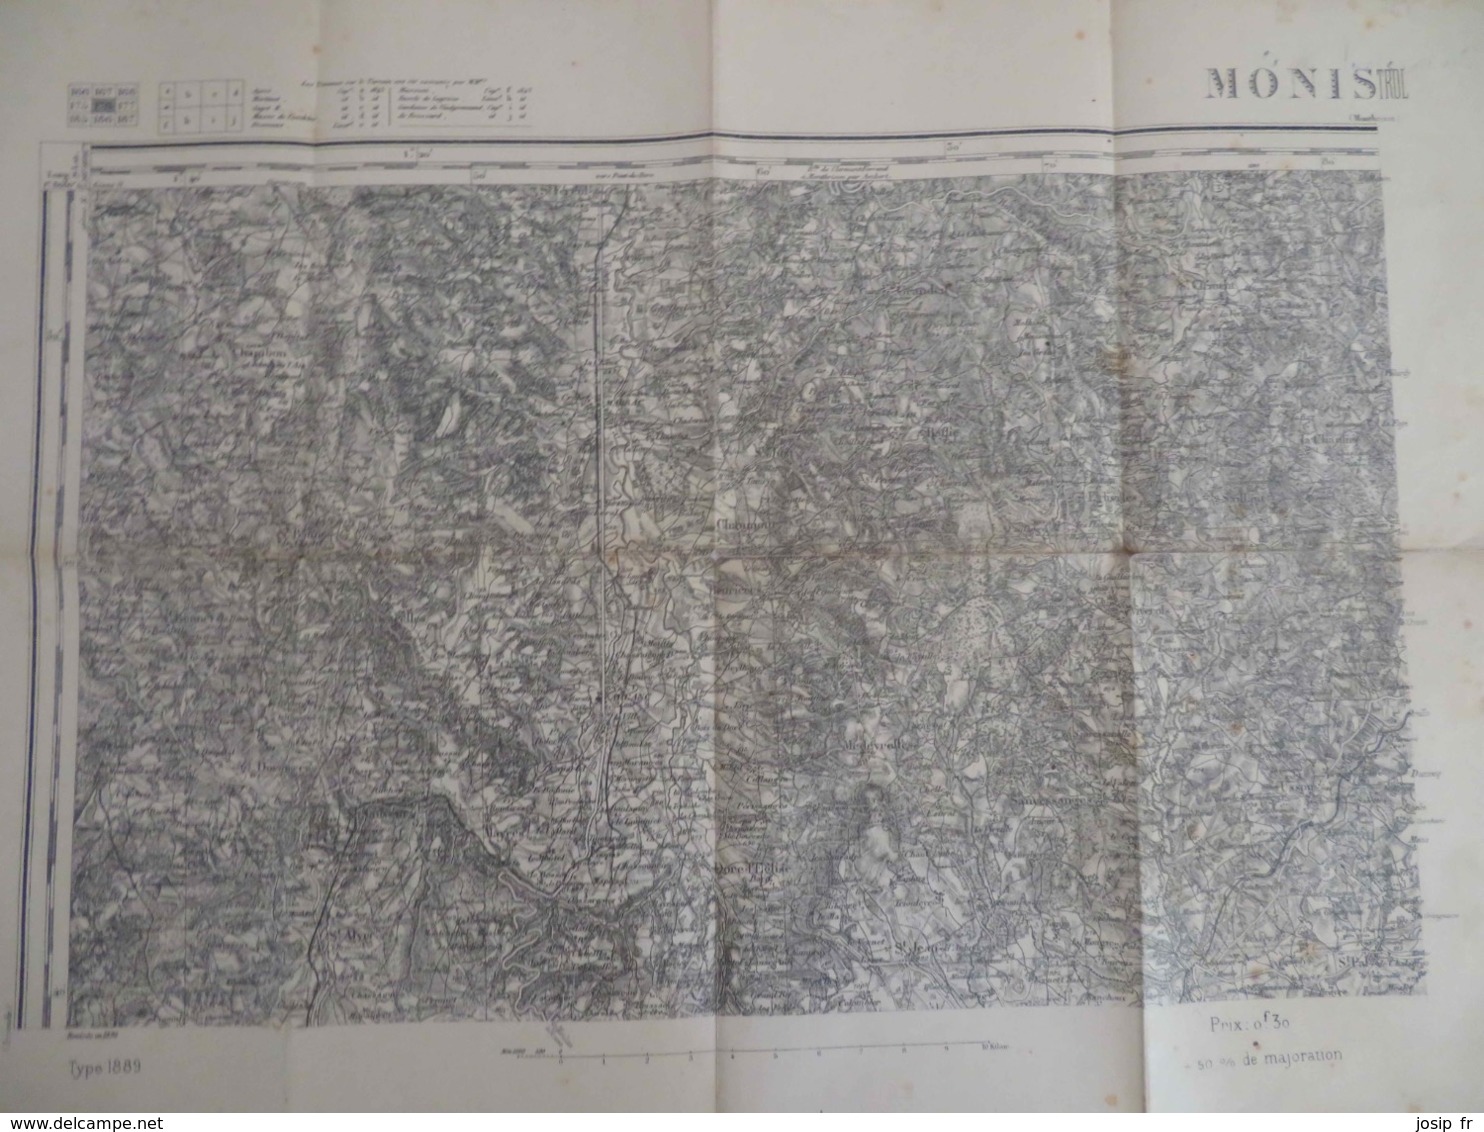 CARTE D'ETAT-MAJOR MONISTROL NORD-OUEST (MONTBRISON) 1/80000 TYPE 1889 REVISION 1898 RHÔNE ET AIN - Topographical Maps